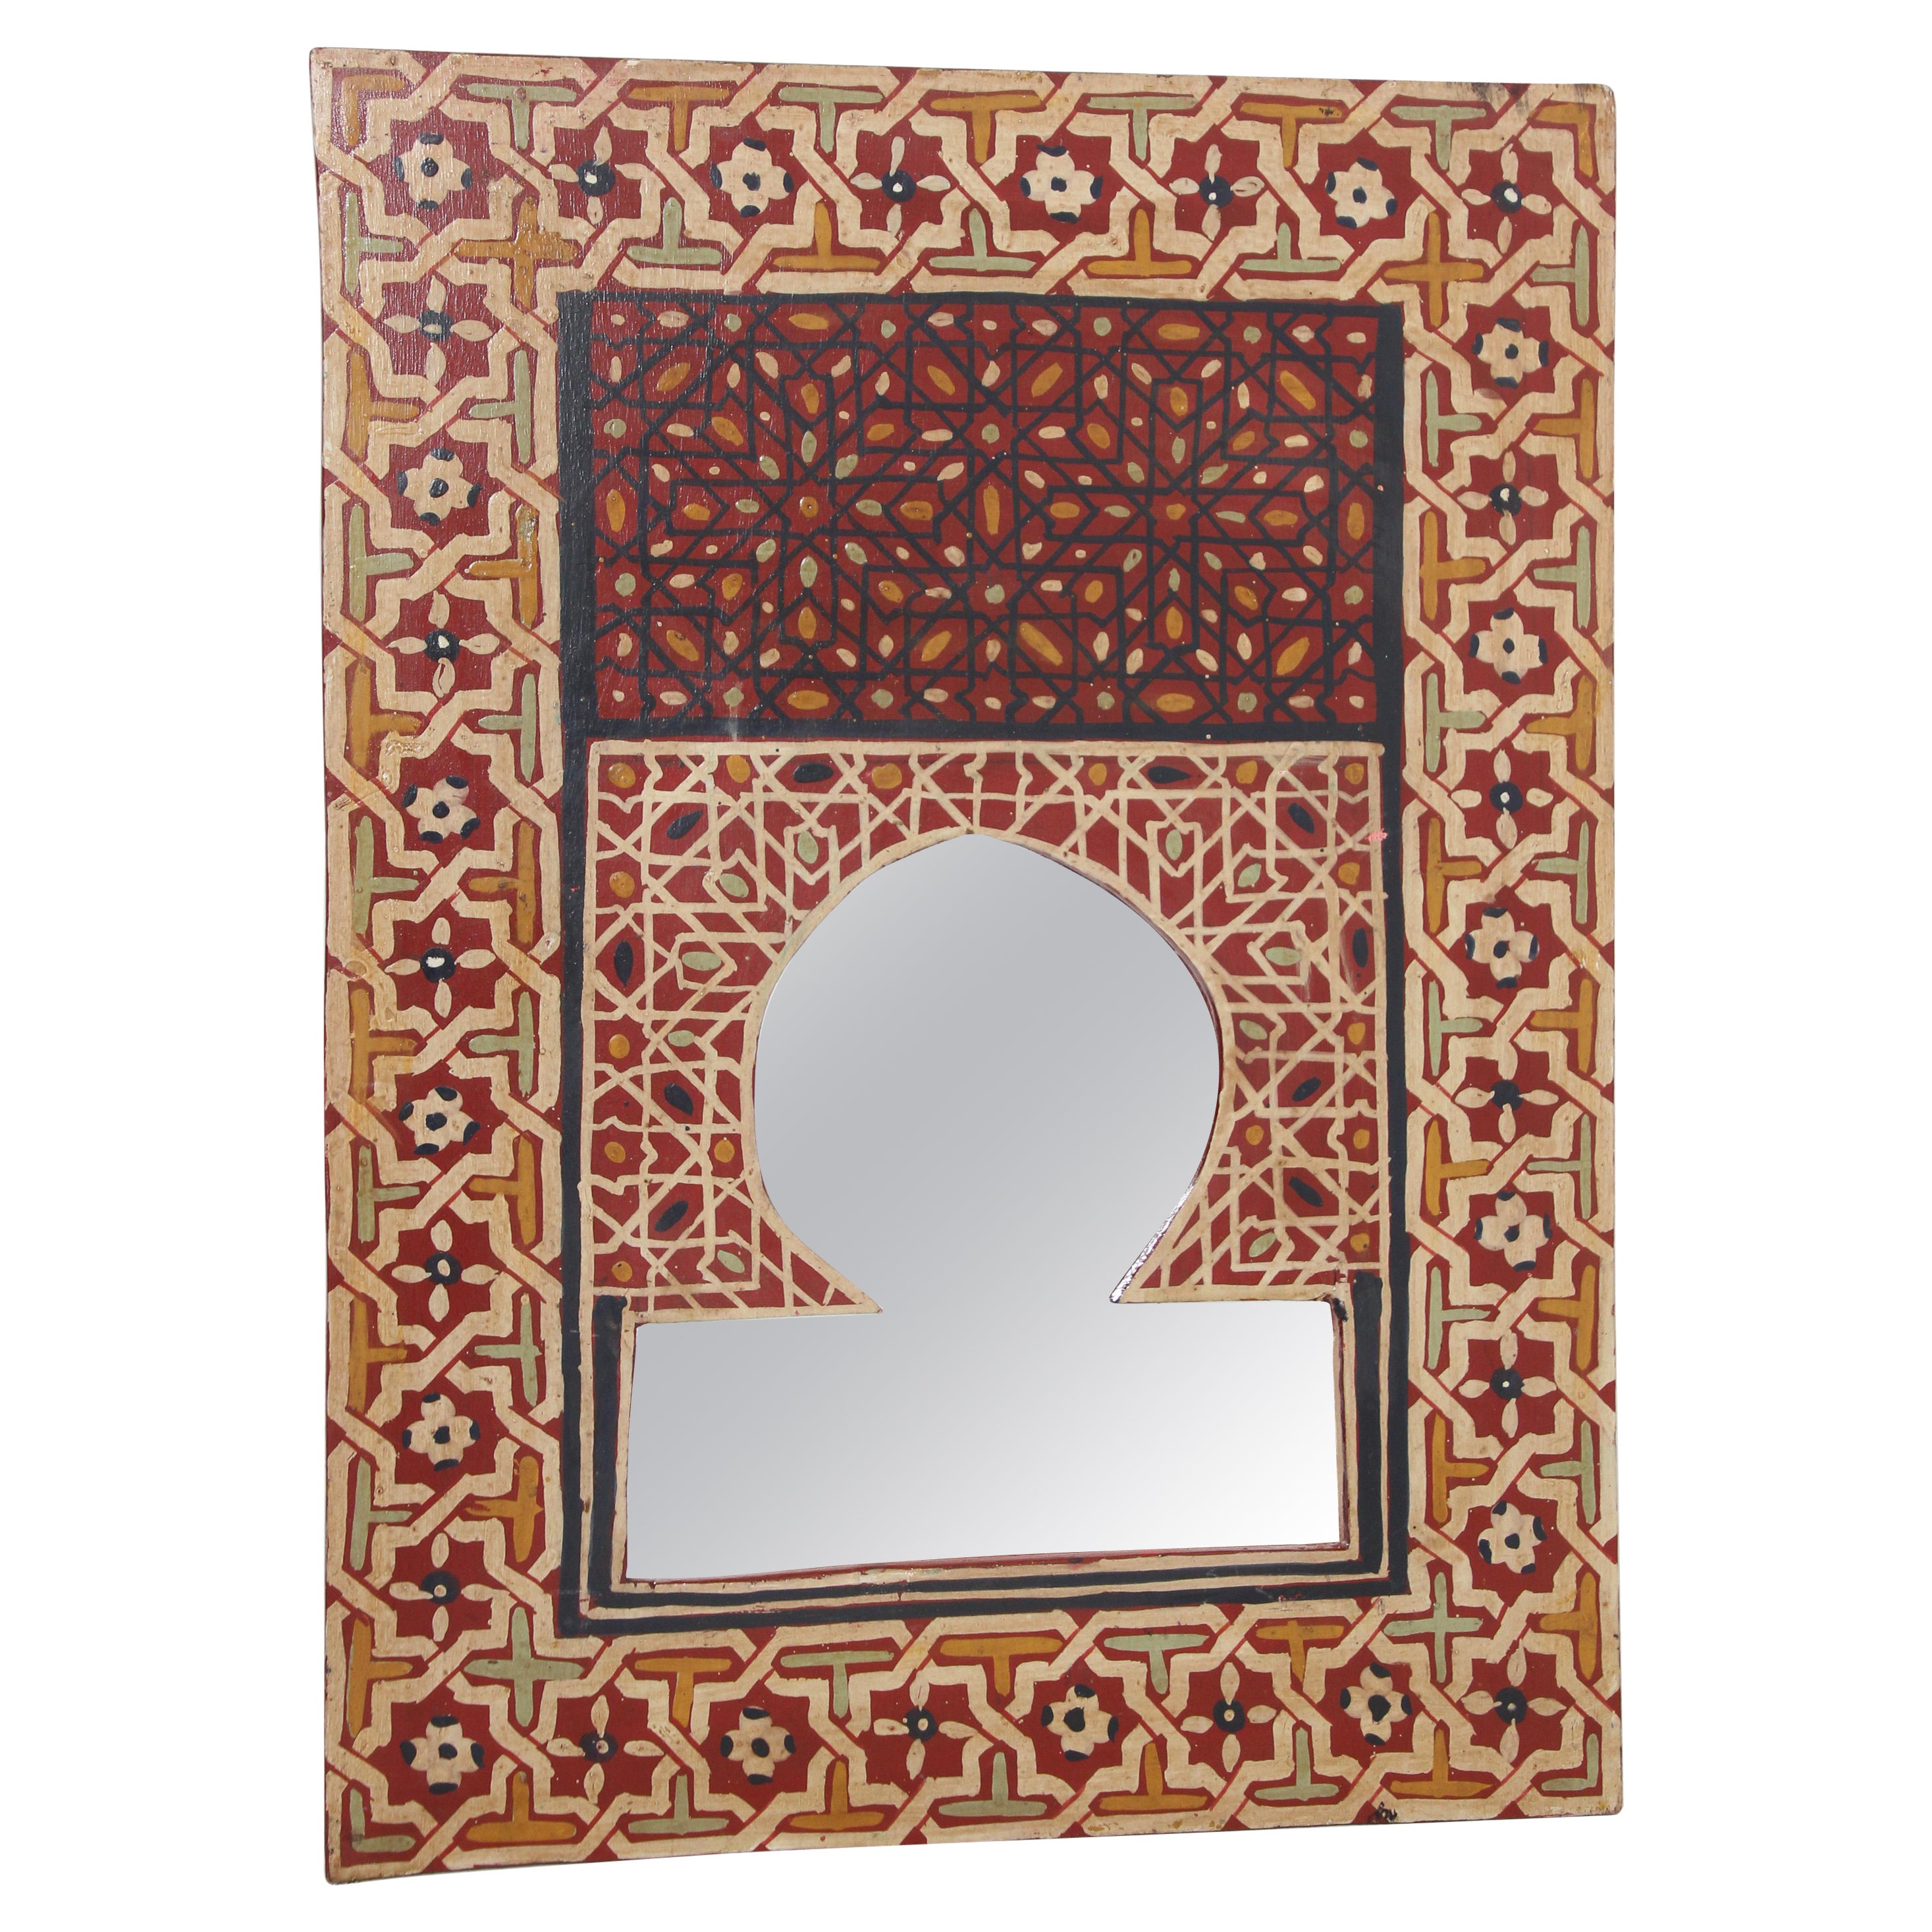 Miroir marocain vintage peint à la main avec un motif mauresque rouge